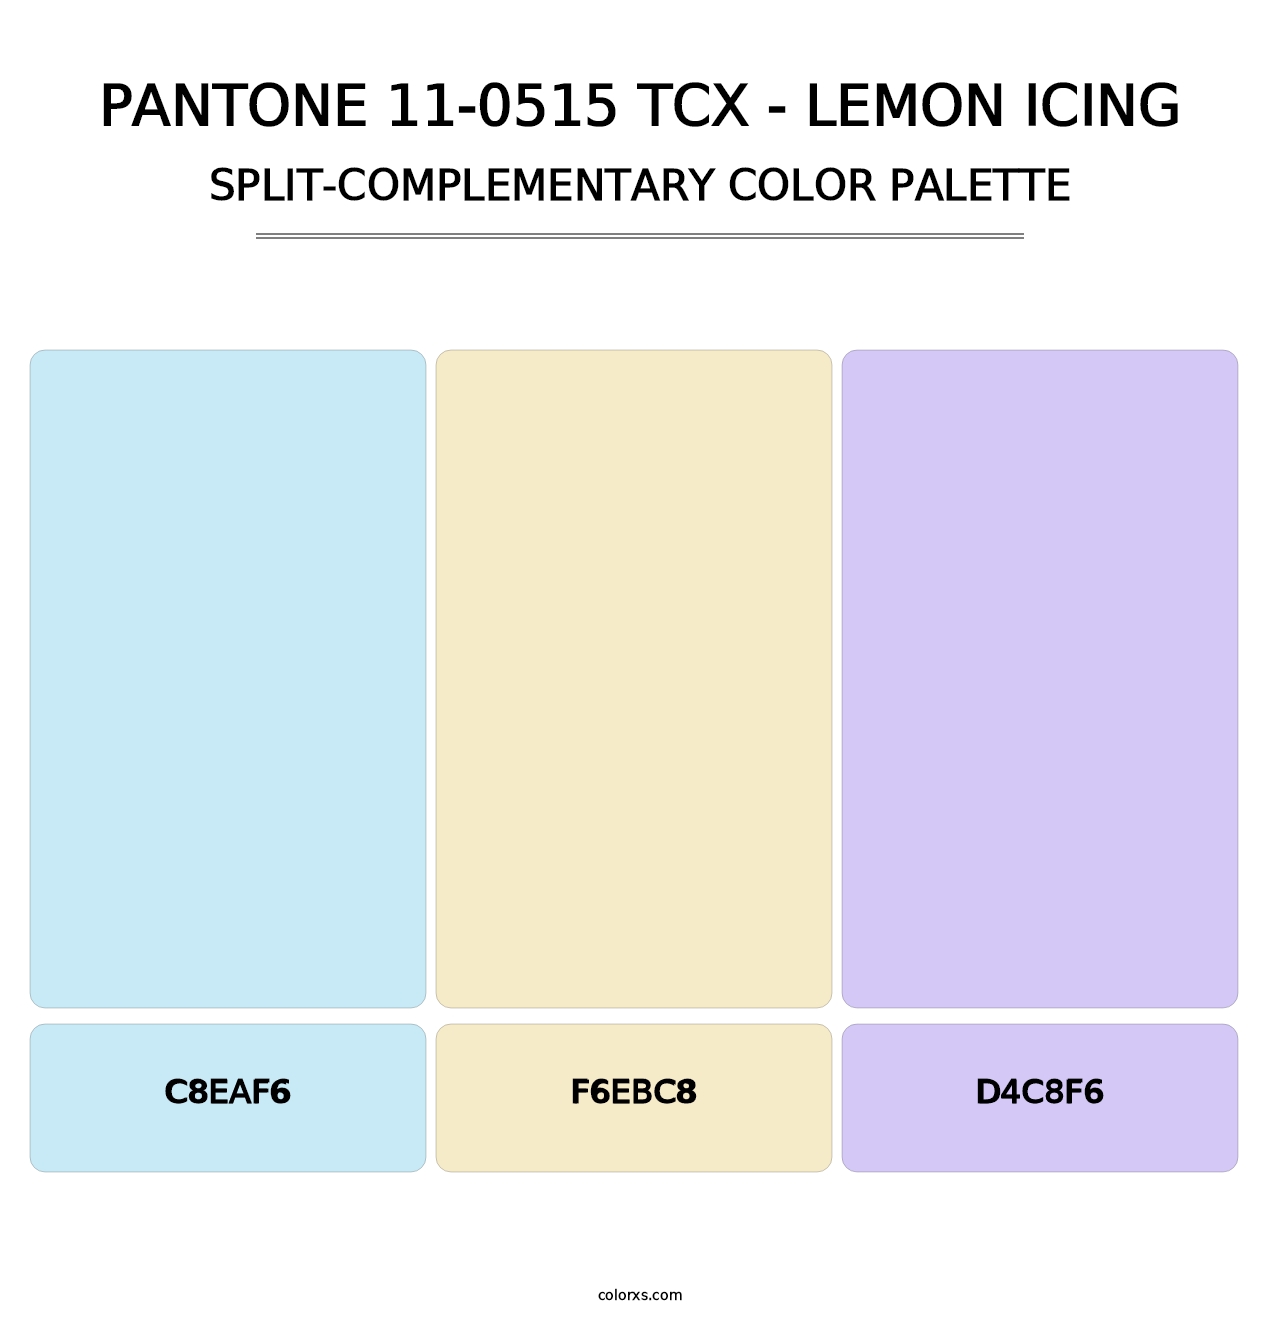 PANTONE 11-0515 TCX - Lemon Icing - Split-Complementary Color Palette